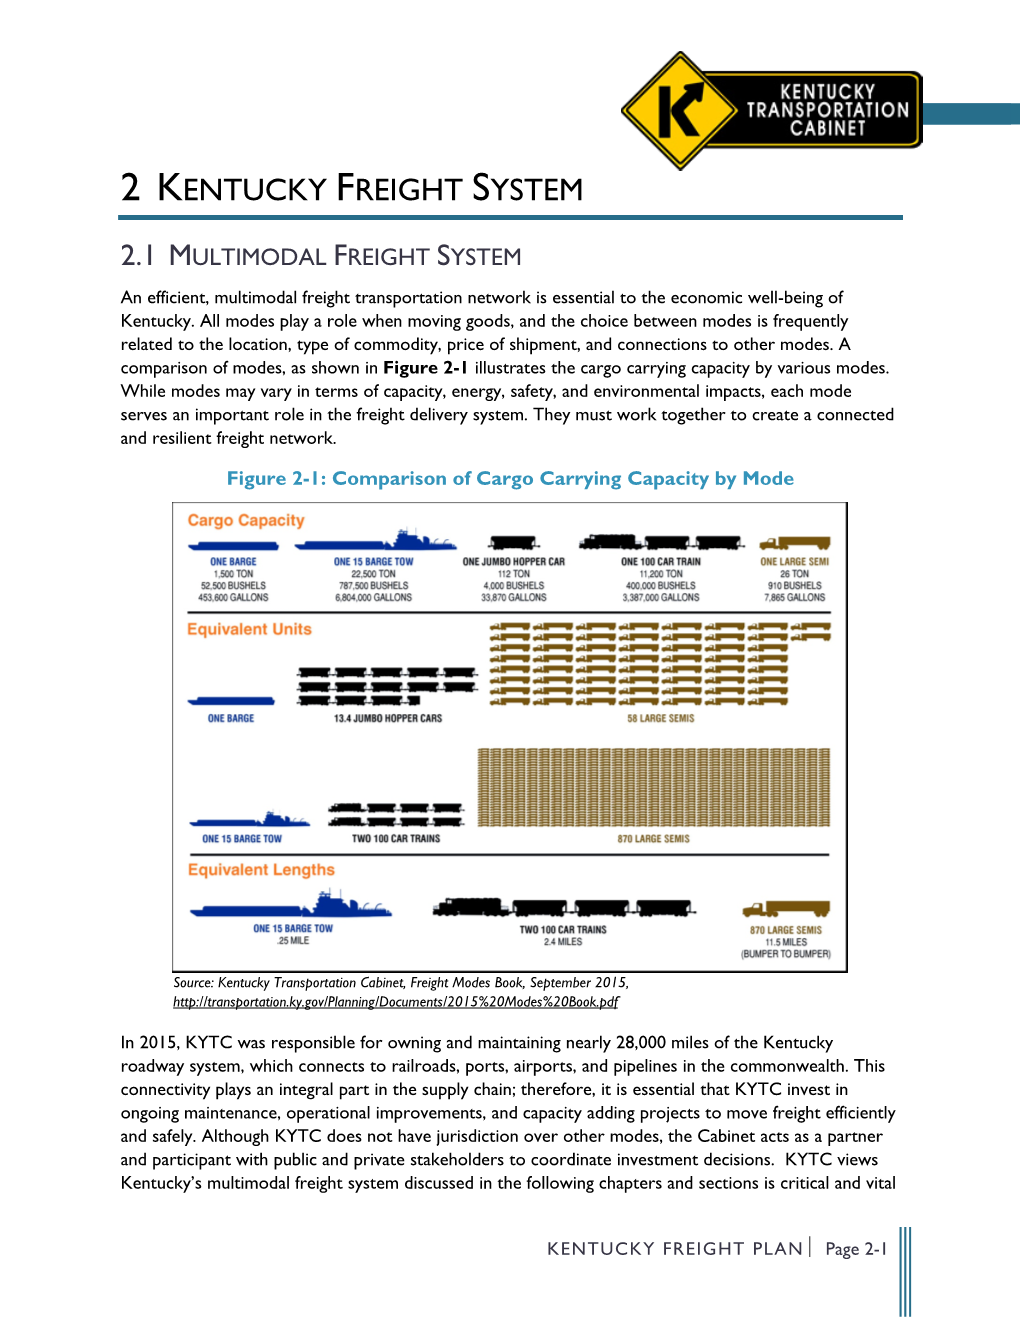 Kentucky Freight System